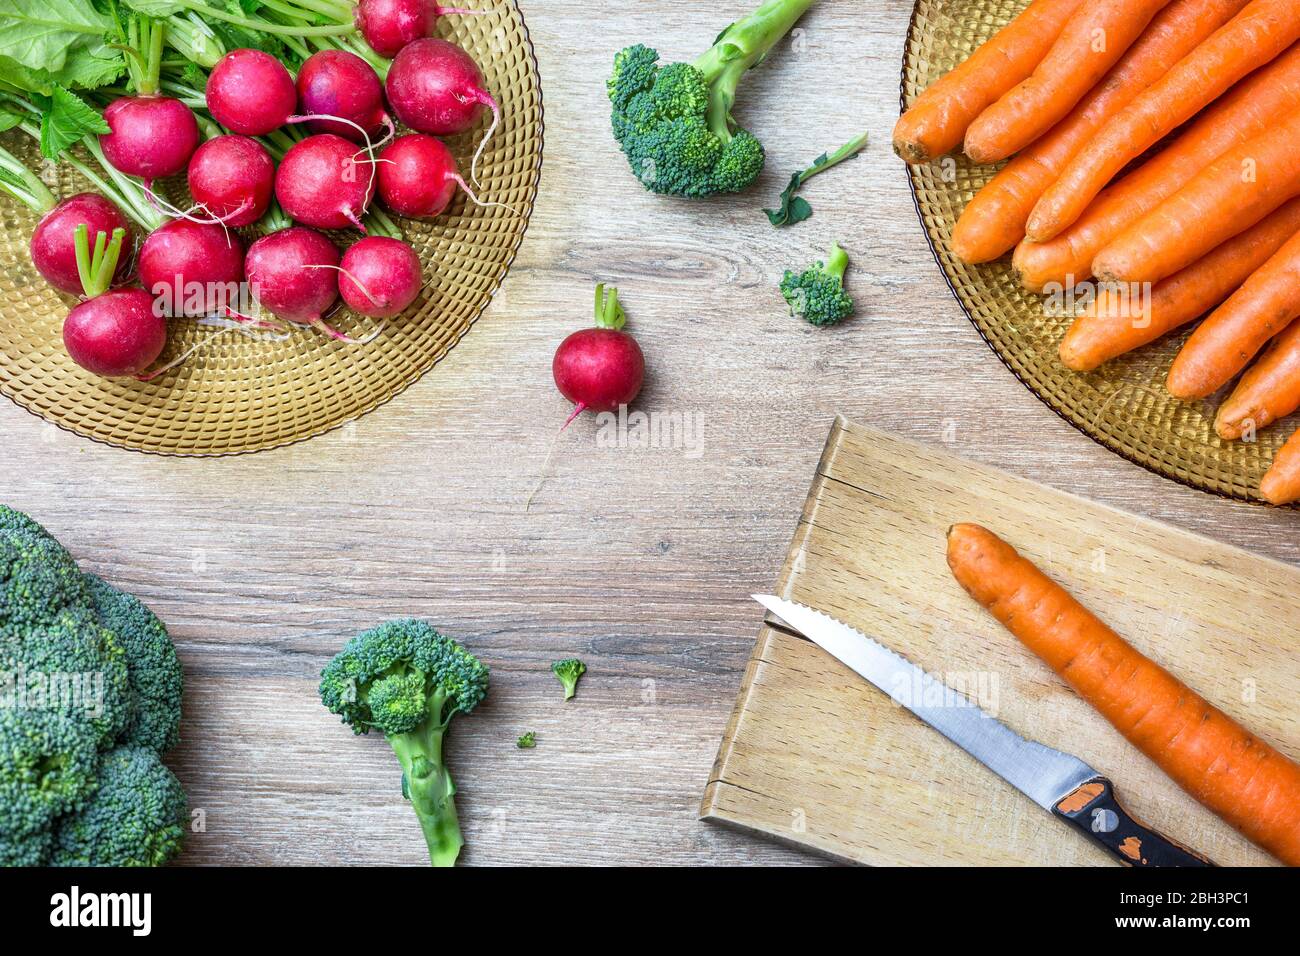 Ravanelli rossi biologici freschi, carote e broccoli su sfondo ligneo. Vista dall'alto con spazio per le copie. Concetto di nutrizione sana. Foto Stock